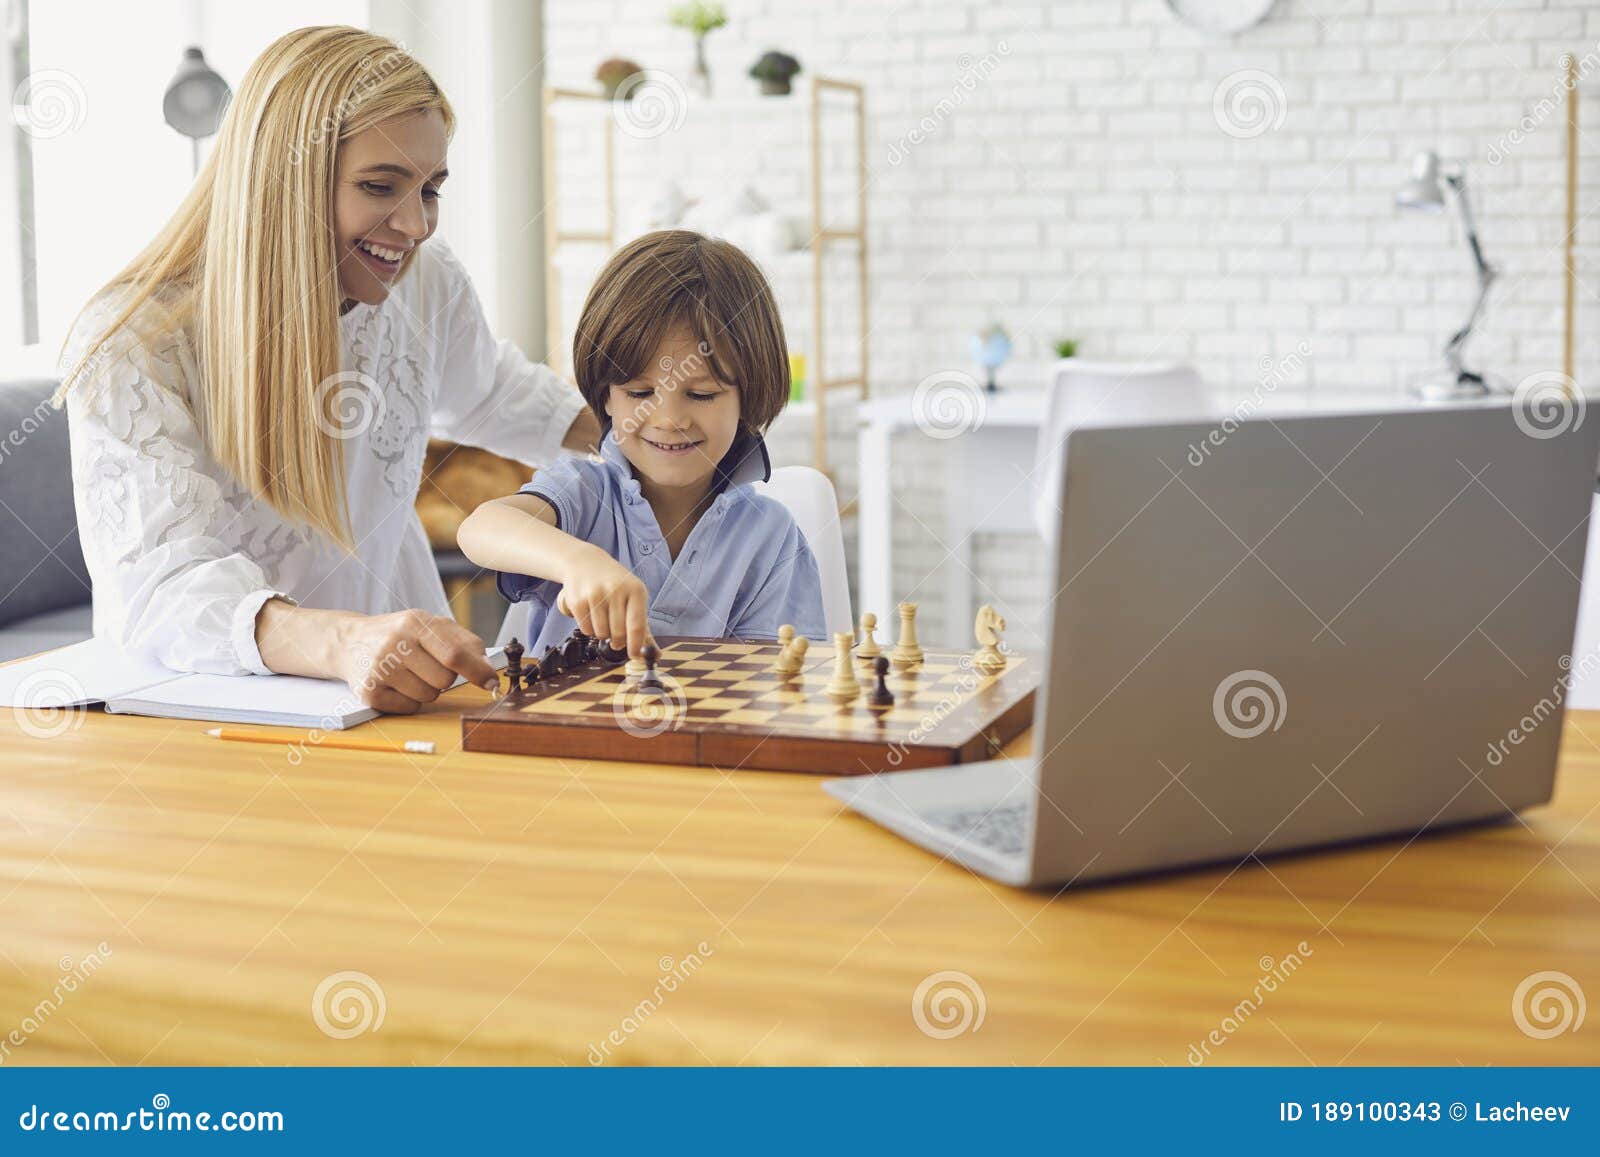 Jogue xadrez online com laptop. aprender a jogar xadrez pela internet.